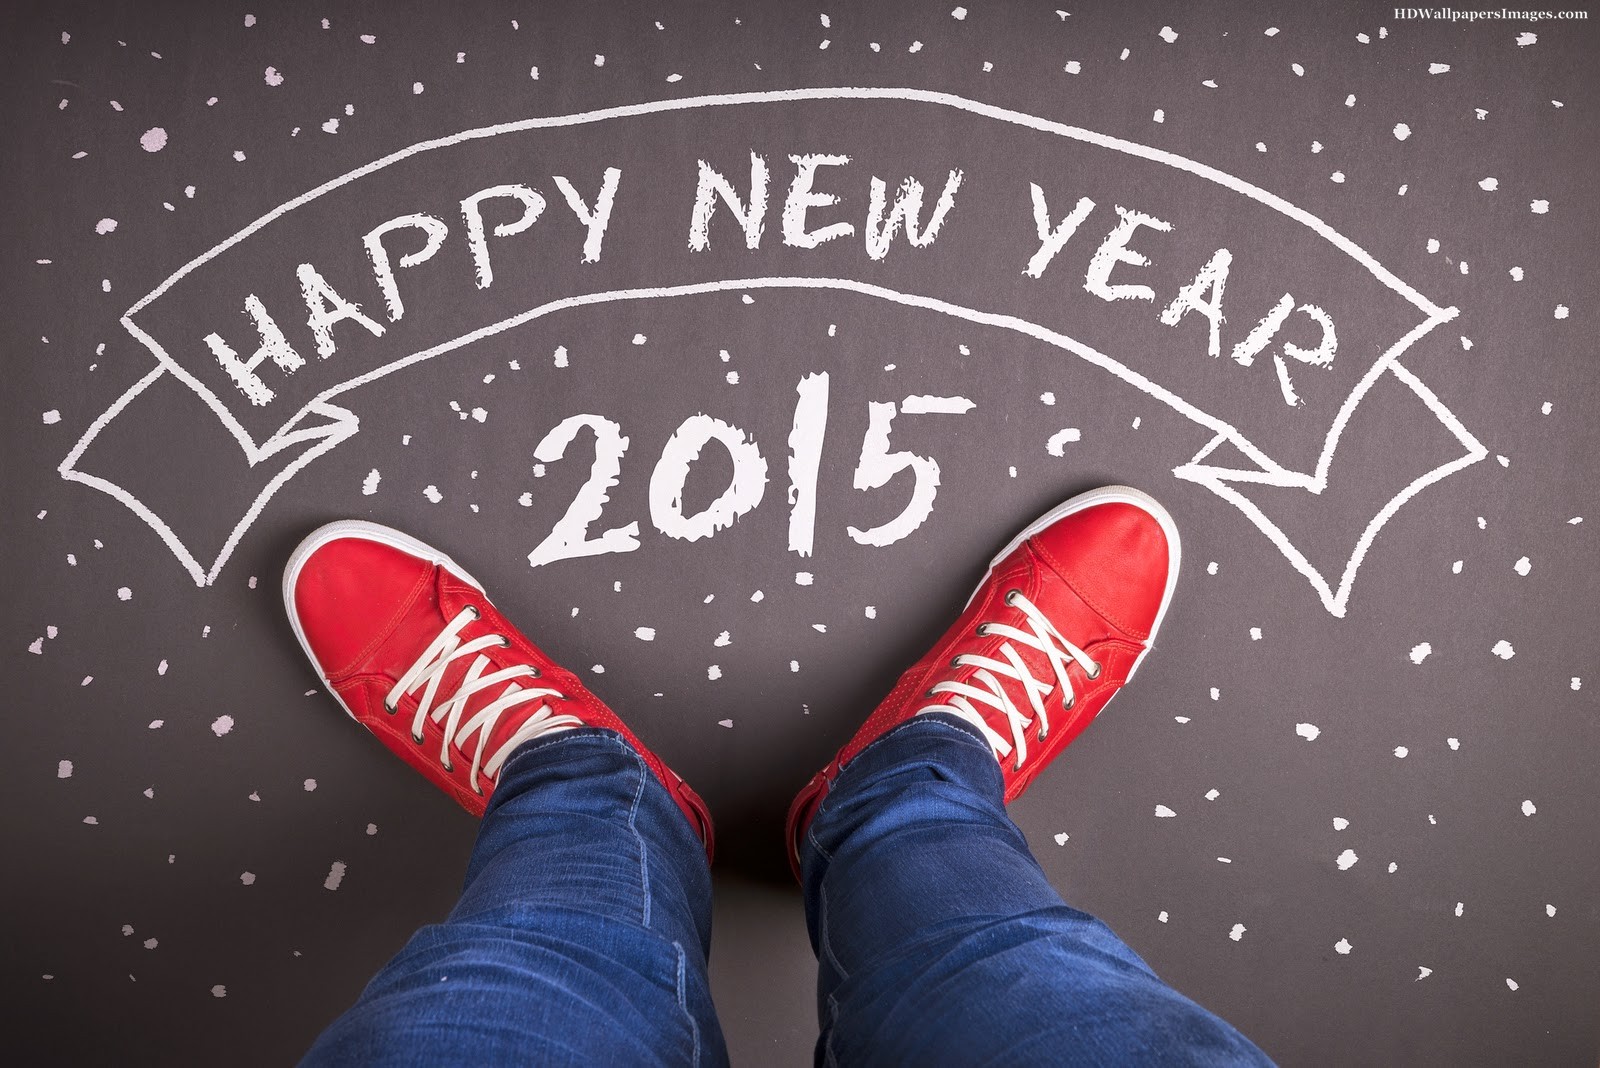 tellhandel souhaite une belle année 2015 à ses lecteurs